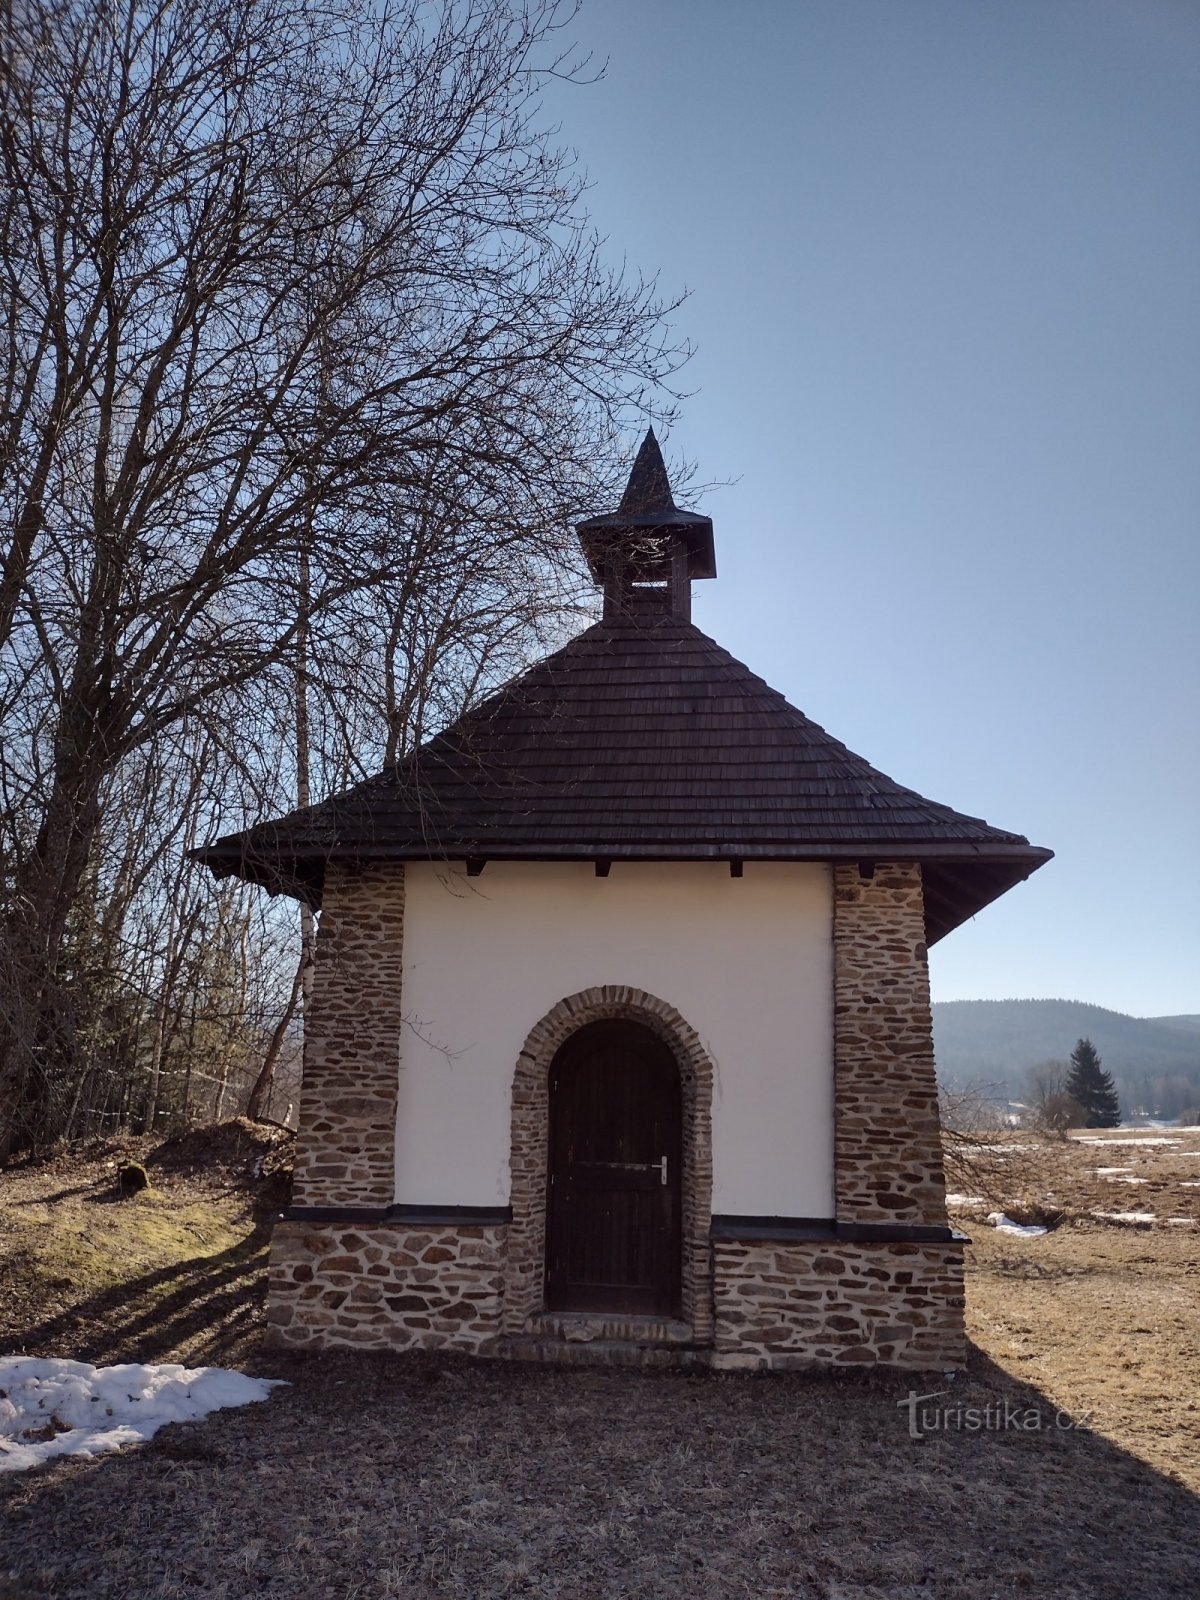 Srní - Mechov - punctul de vedere al lui Klostermann - Srní